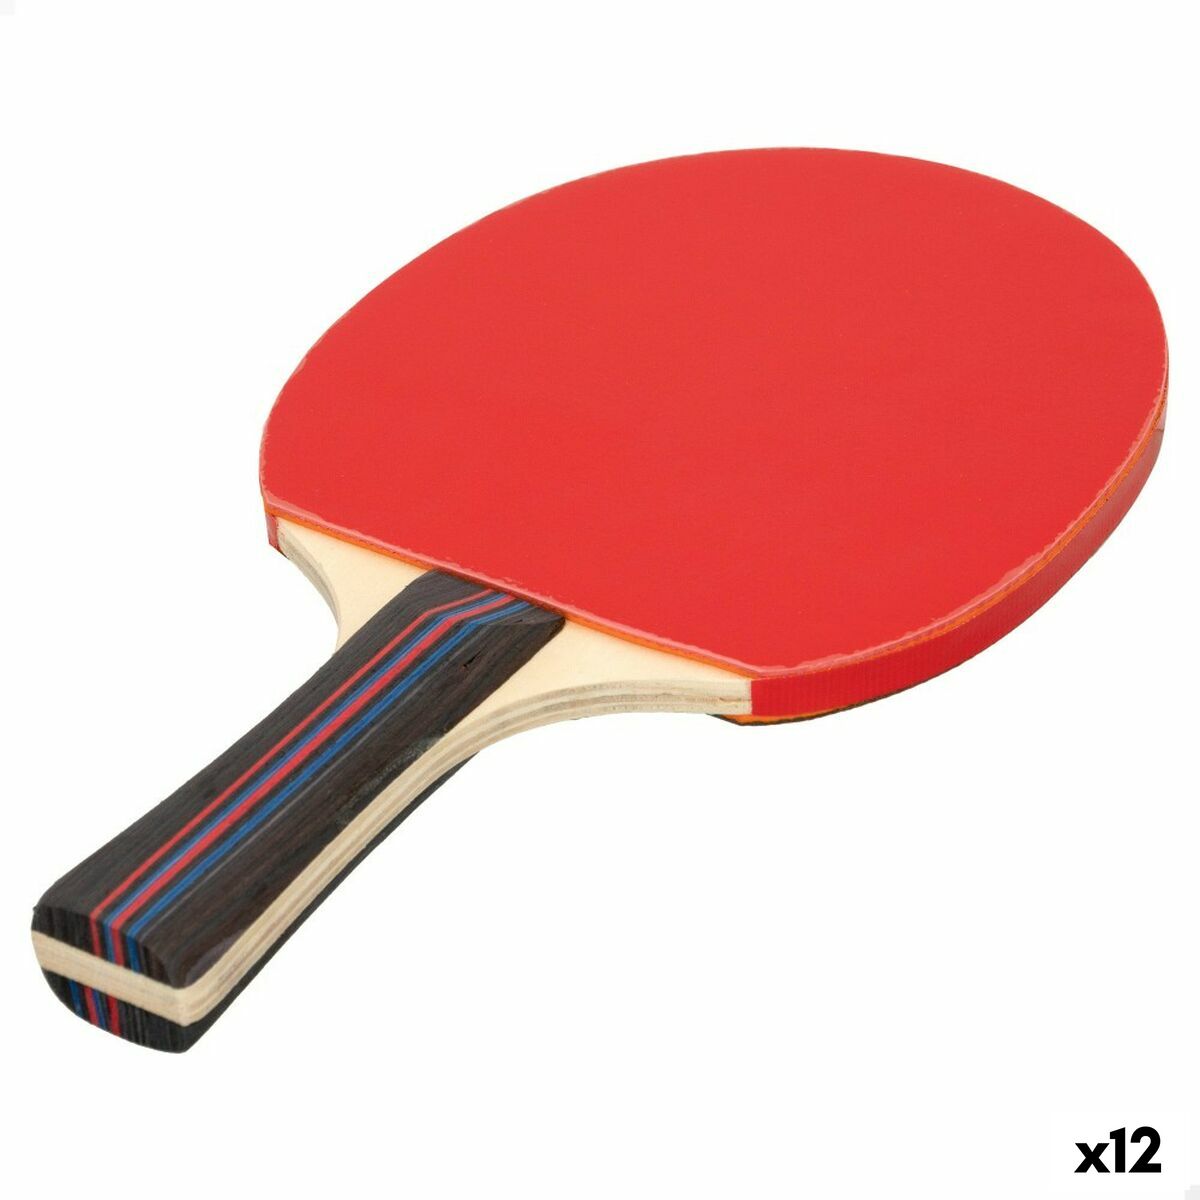 Ping Pong Racket Aktive 12 Units